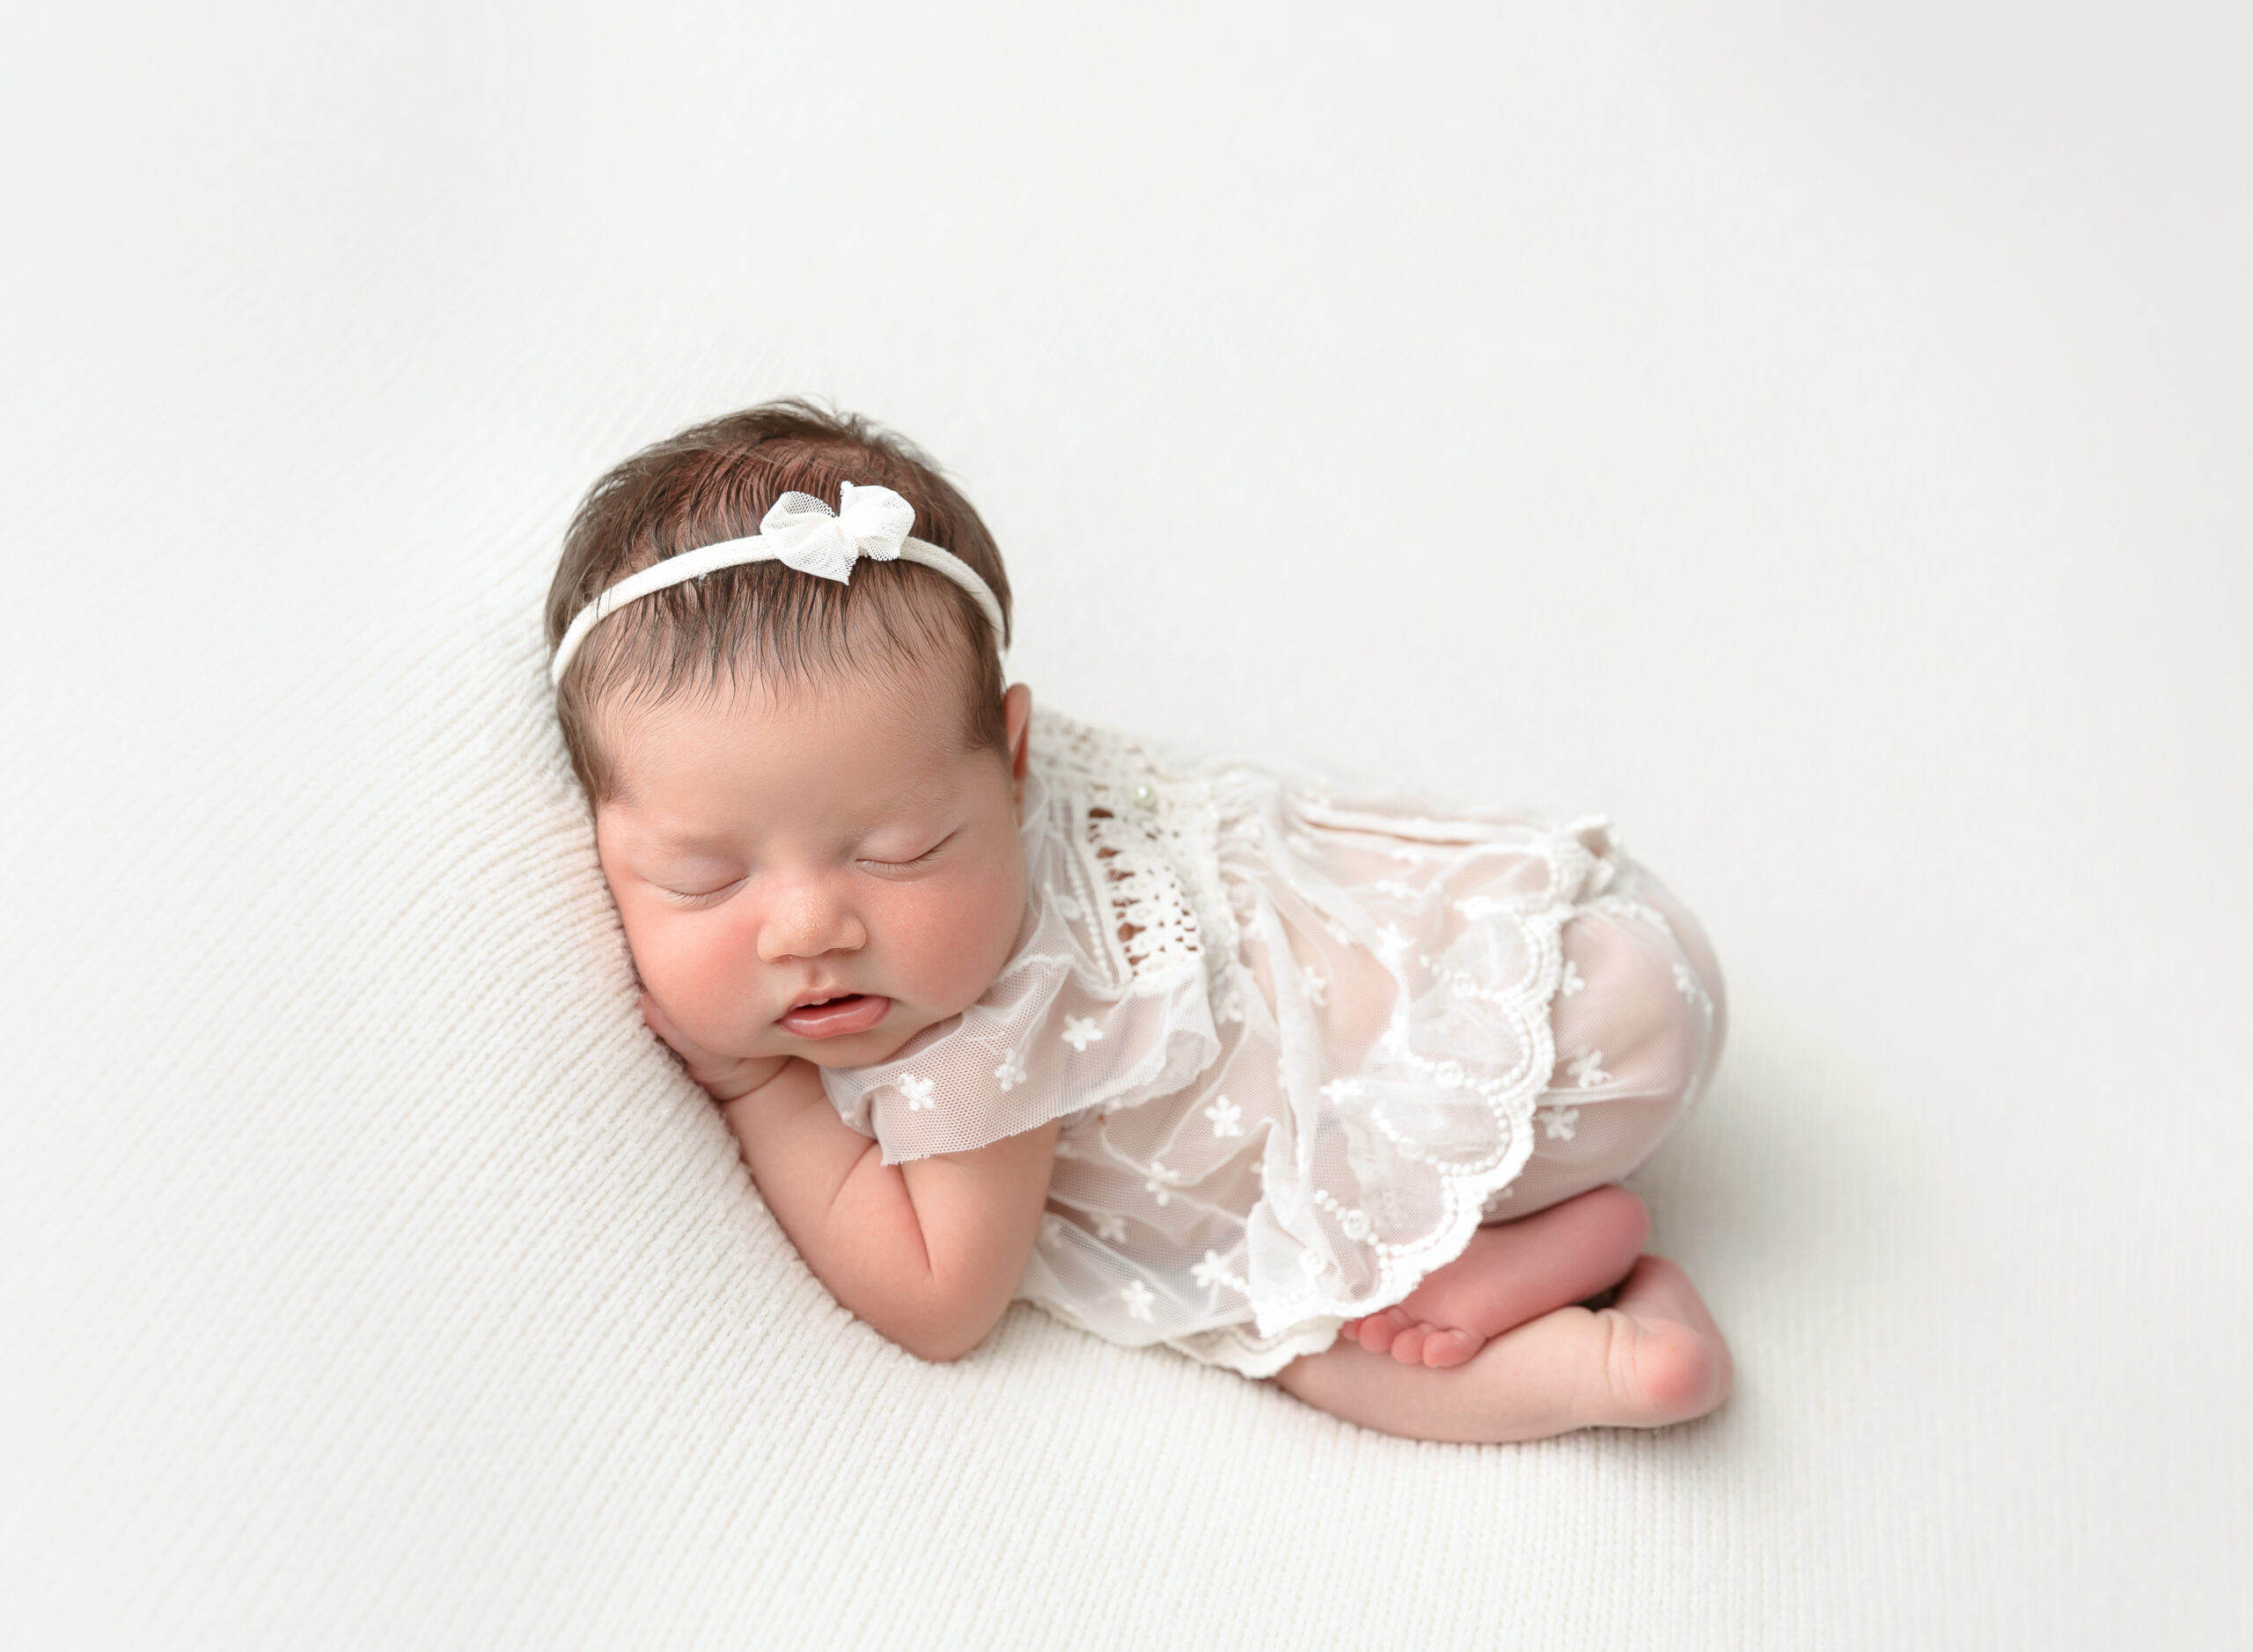 Waco Newborn photographer